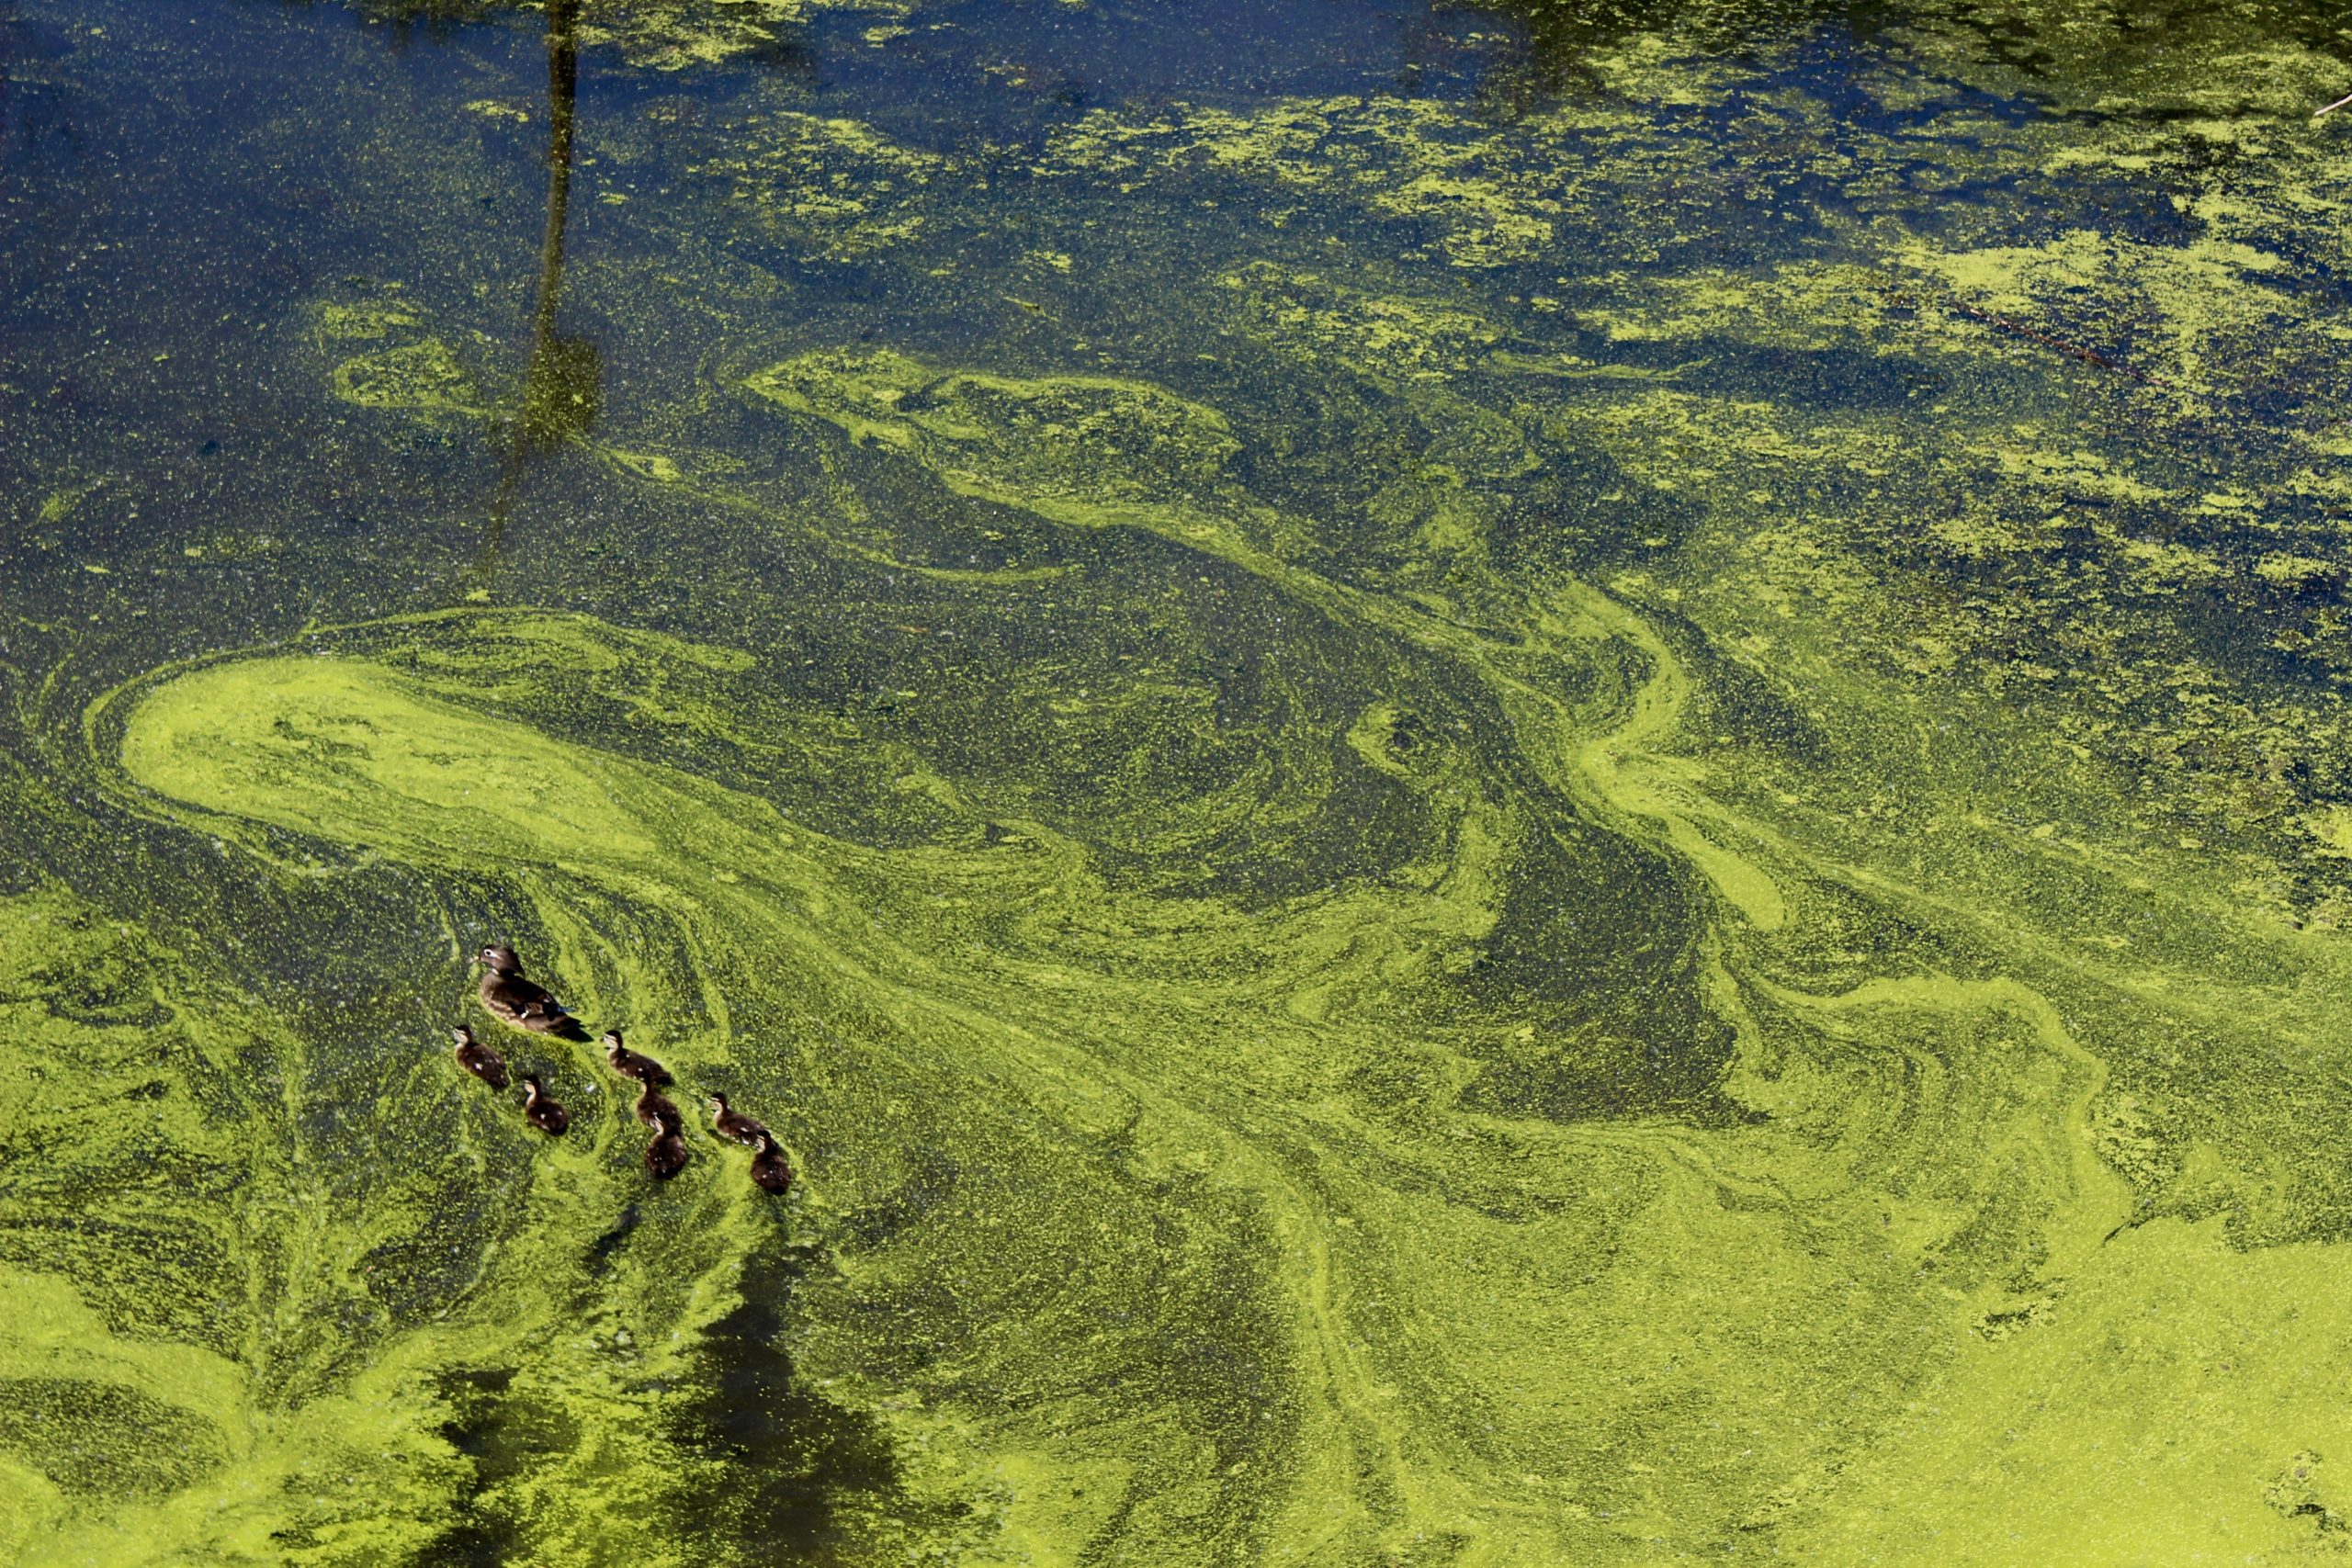 Фото водорослей в воде